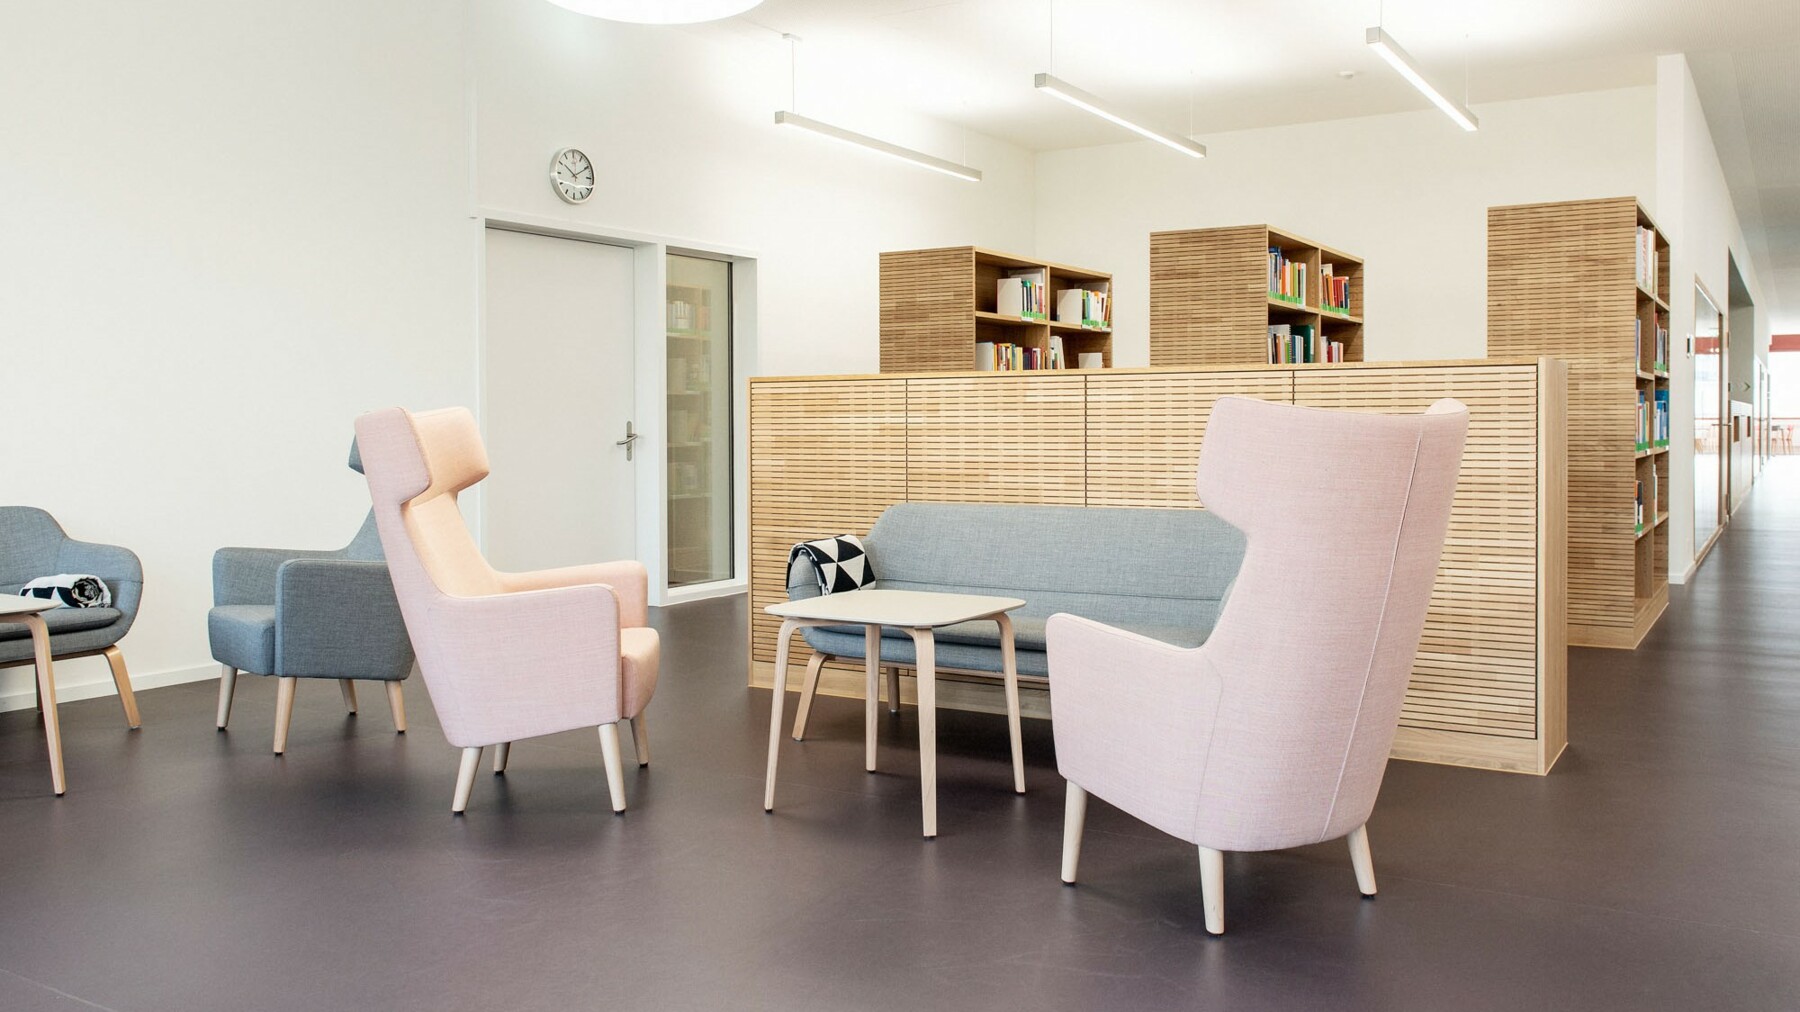 Raumakustik verbessernde Möbel aus LIGNO® Akustikelementen in Eiche wirken als echte Designelemente in dieser Hochschule in Aarau.